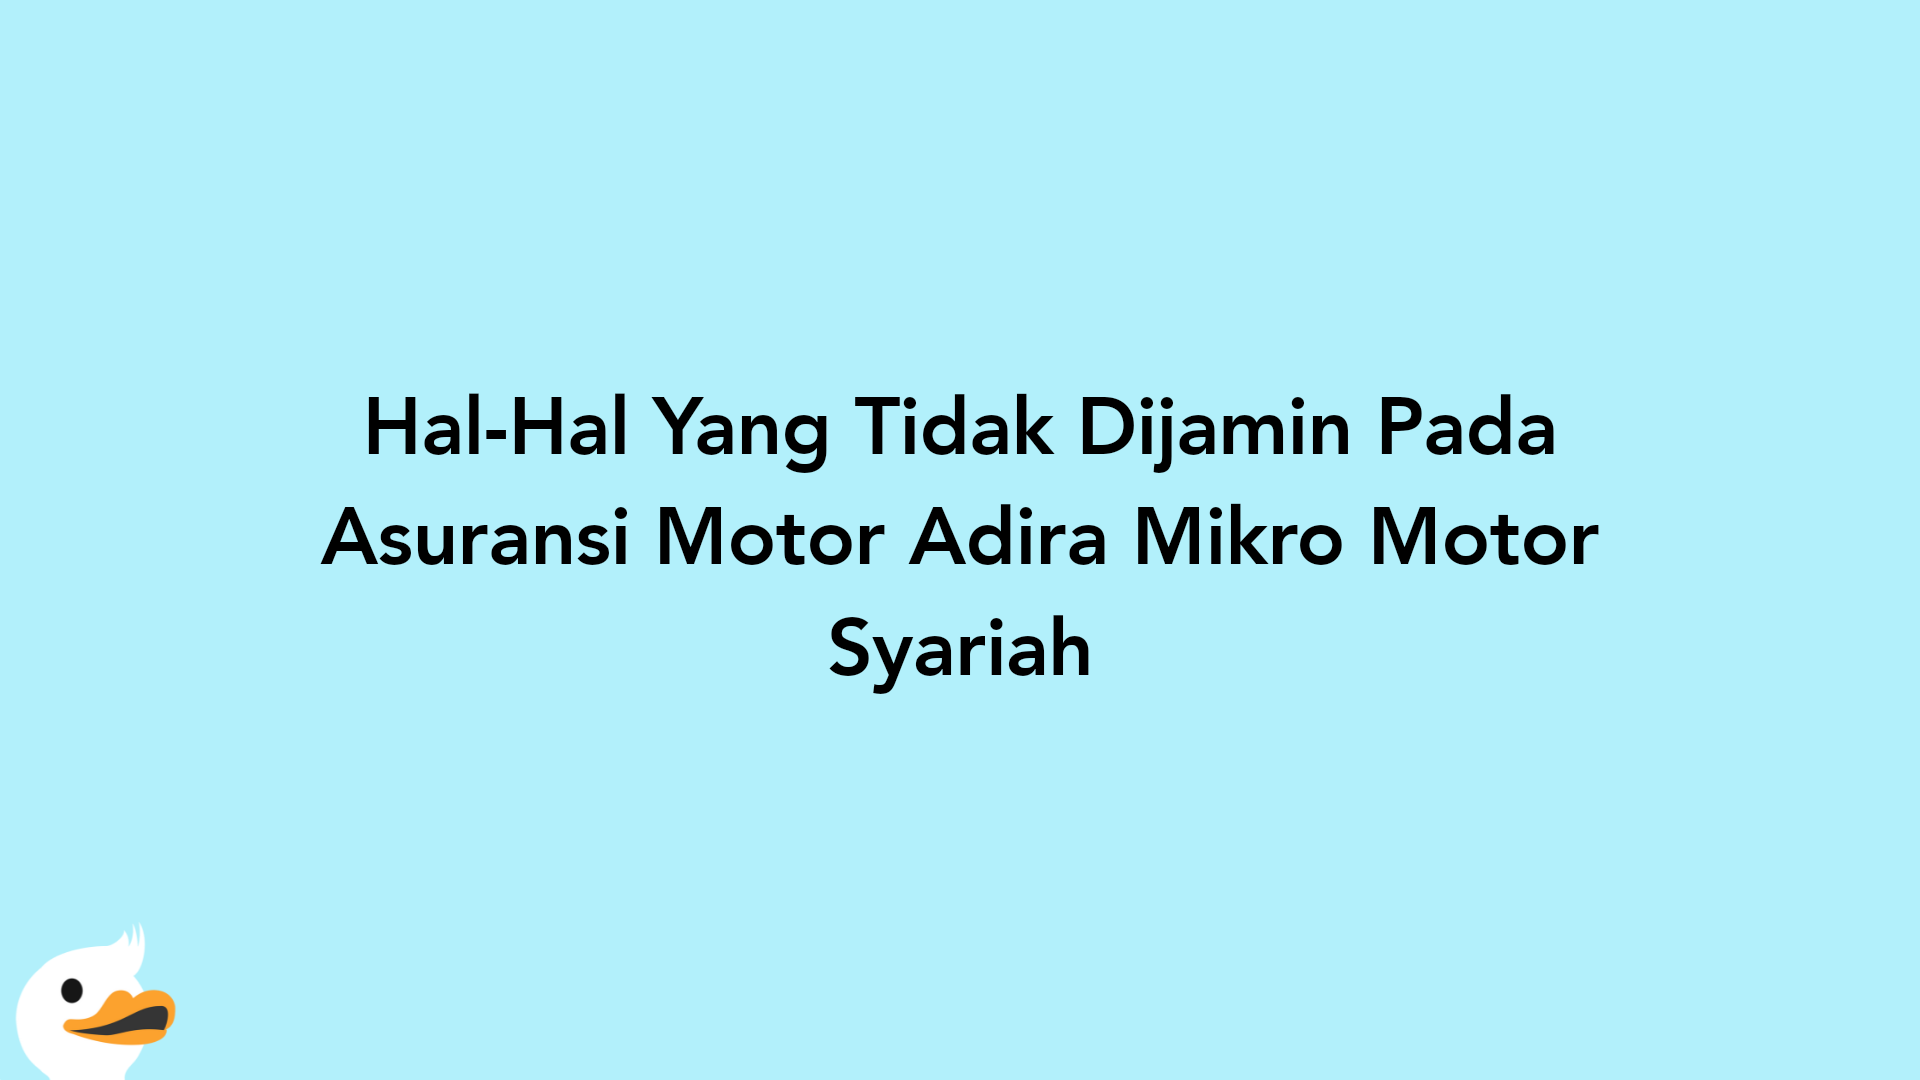 Hal-Hal Yang Tidak Dijamin Pada Asuransi Motor Adira Mikro Motor Syariah